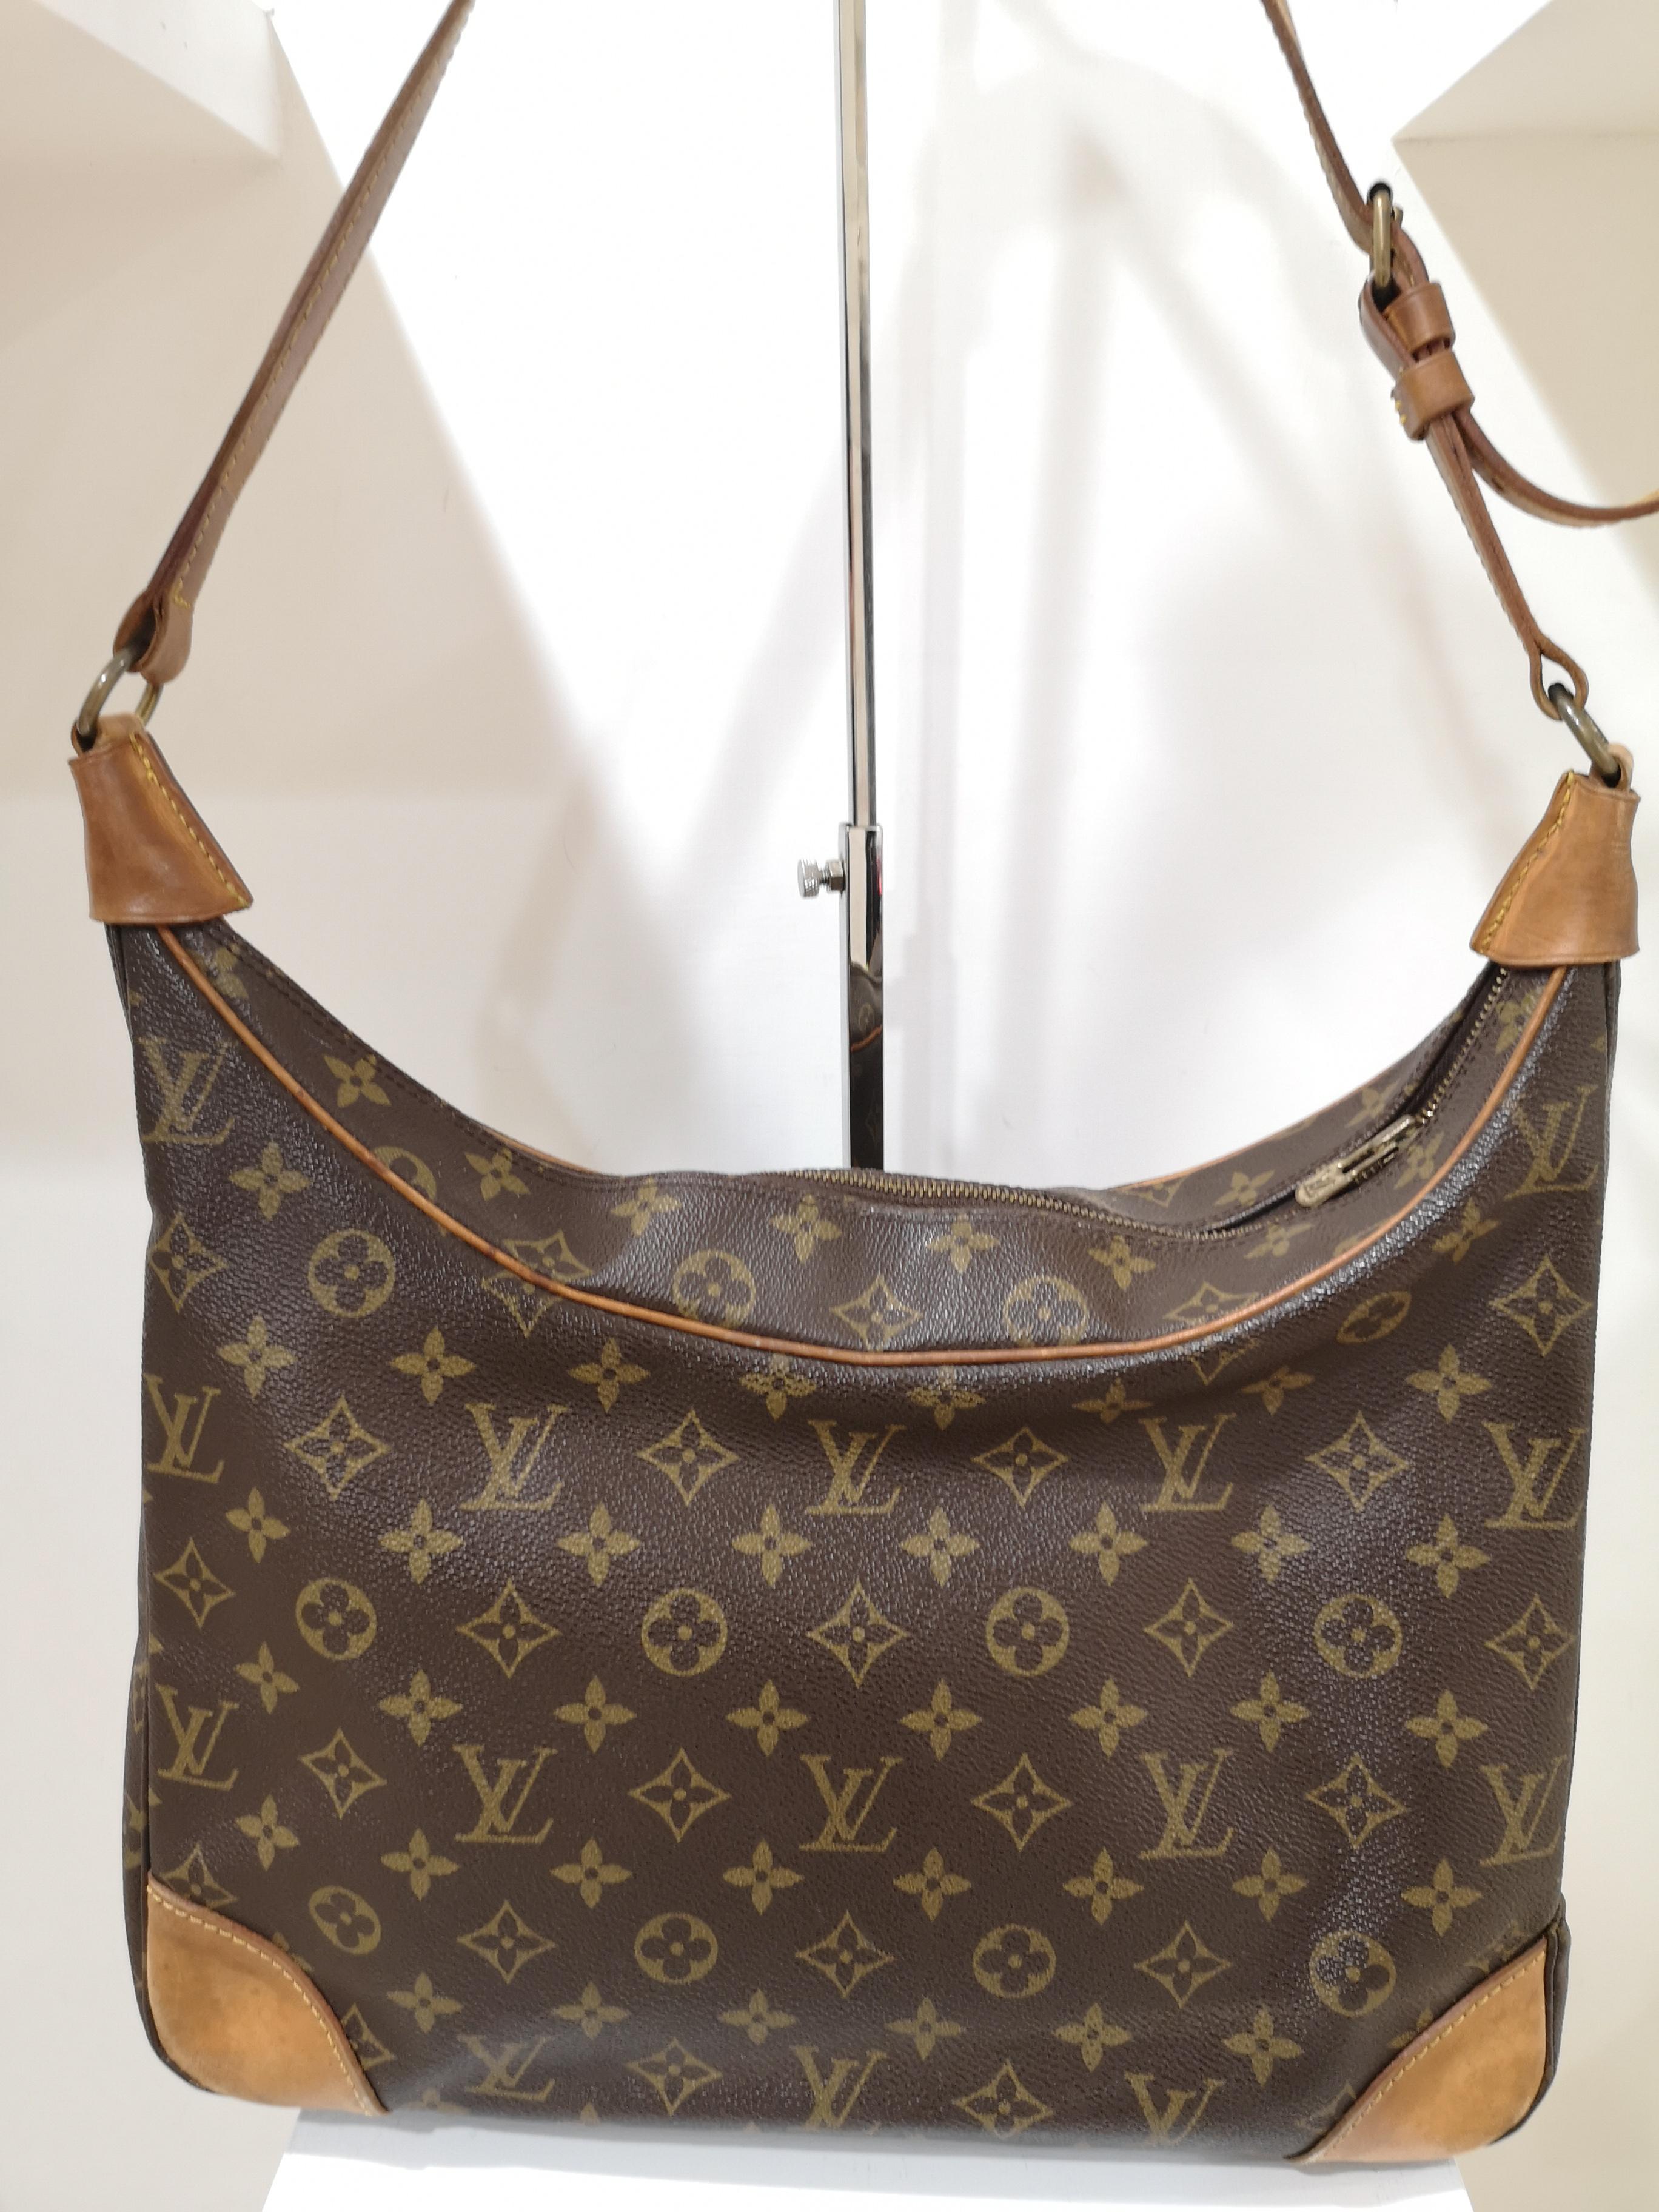 Louis Vuitton monogram shoulder bag
measurements: 32 * 36 cm
total lenght bag and handle 62 cm adjustable 
depth 12 cm